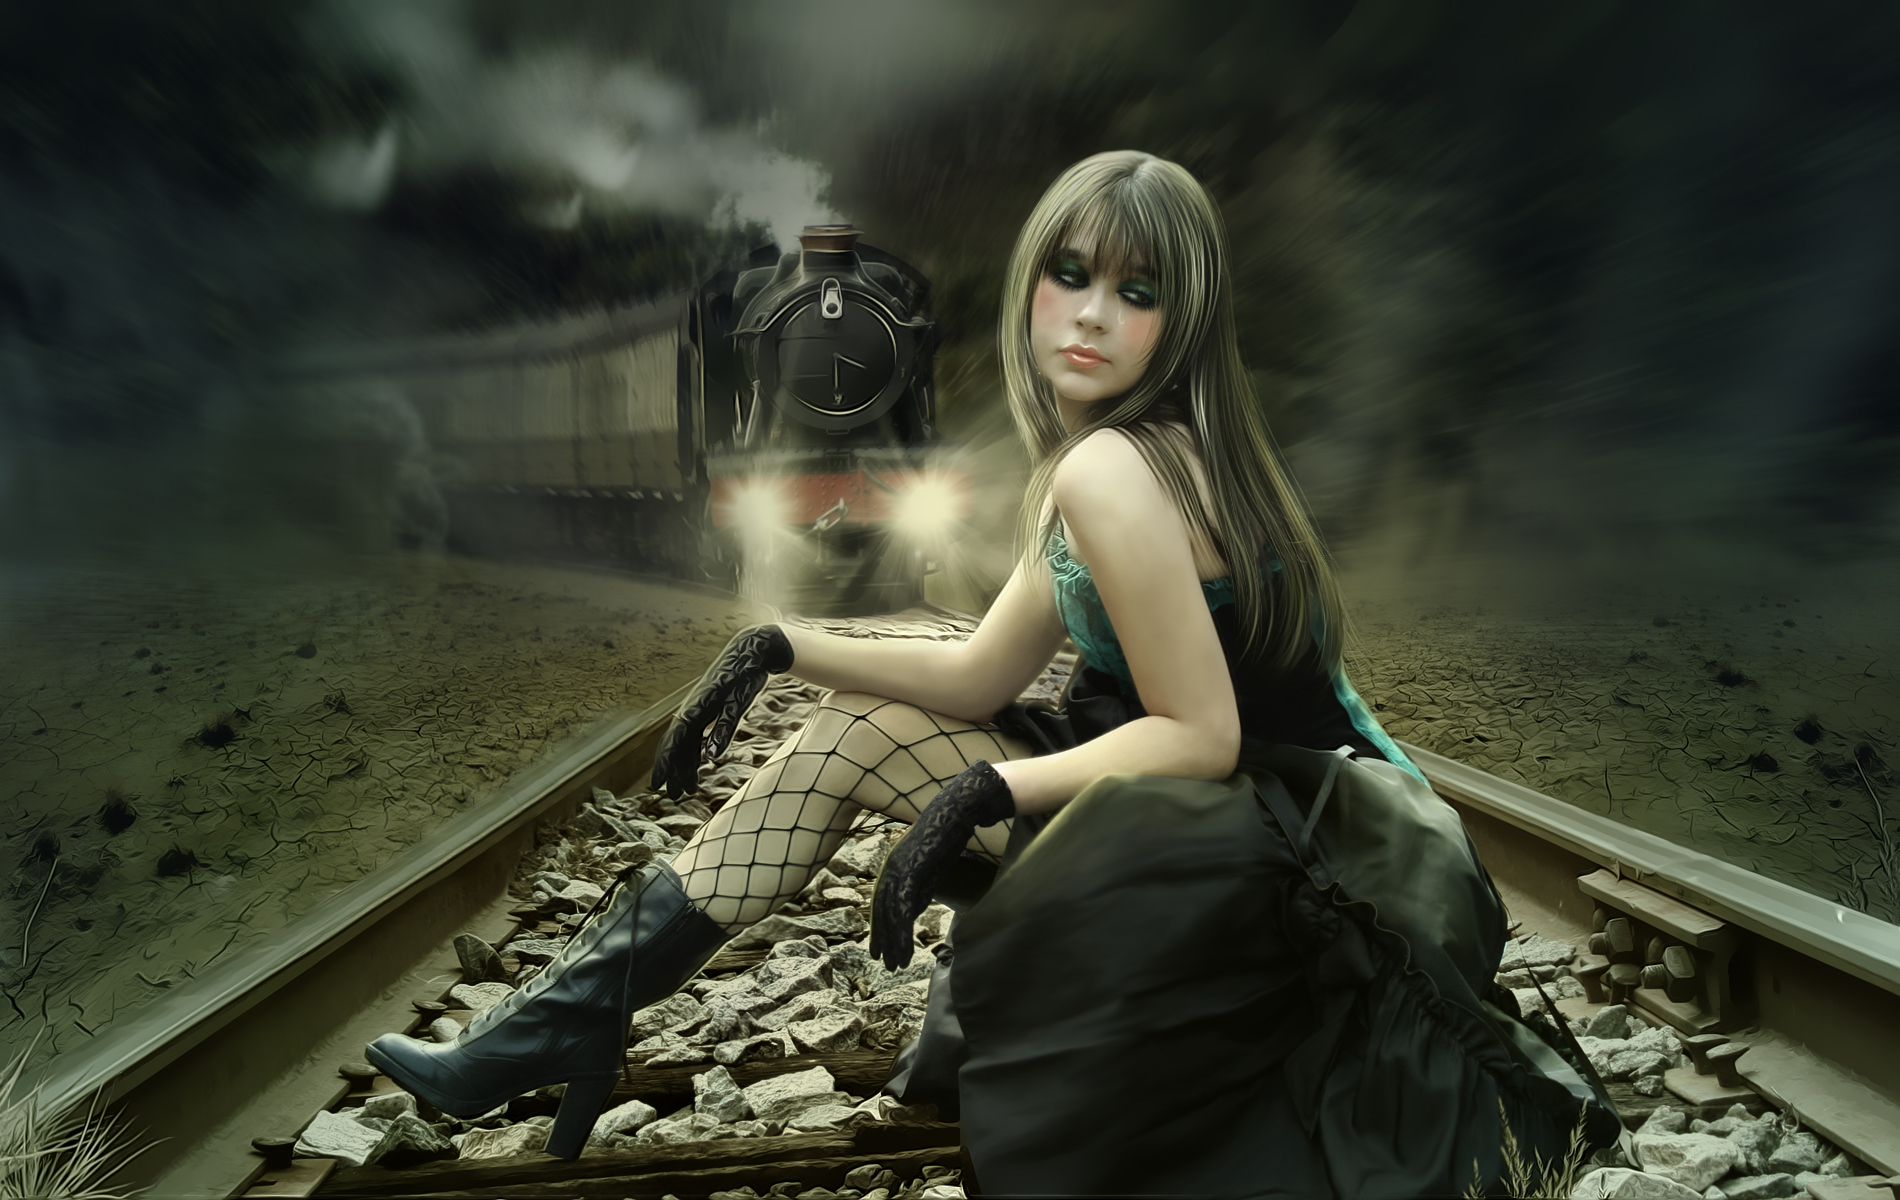 dark, emo, suicide, train